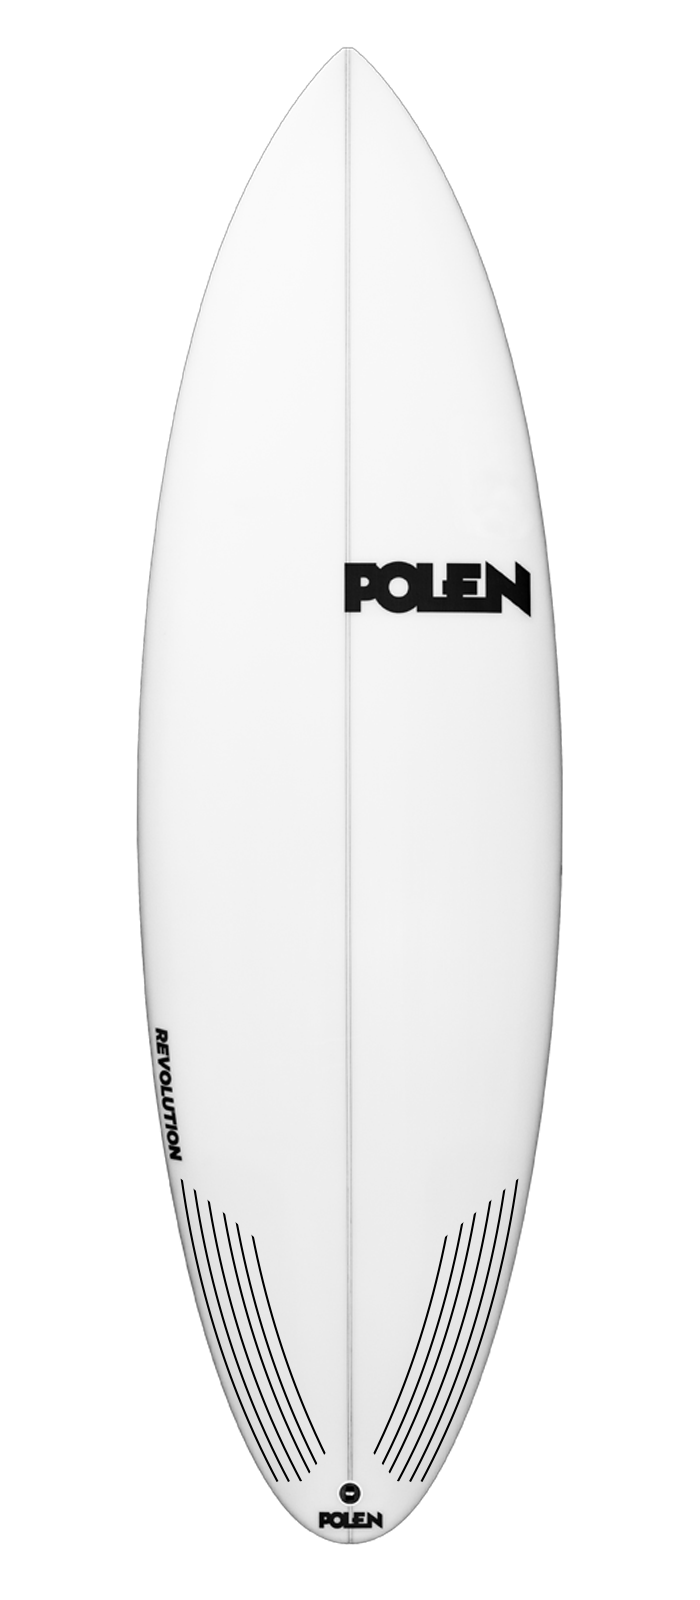 R*EVOLUTION surfboard model deck